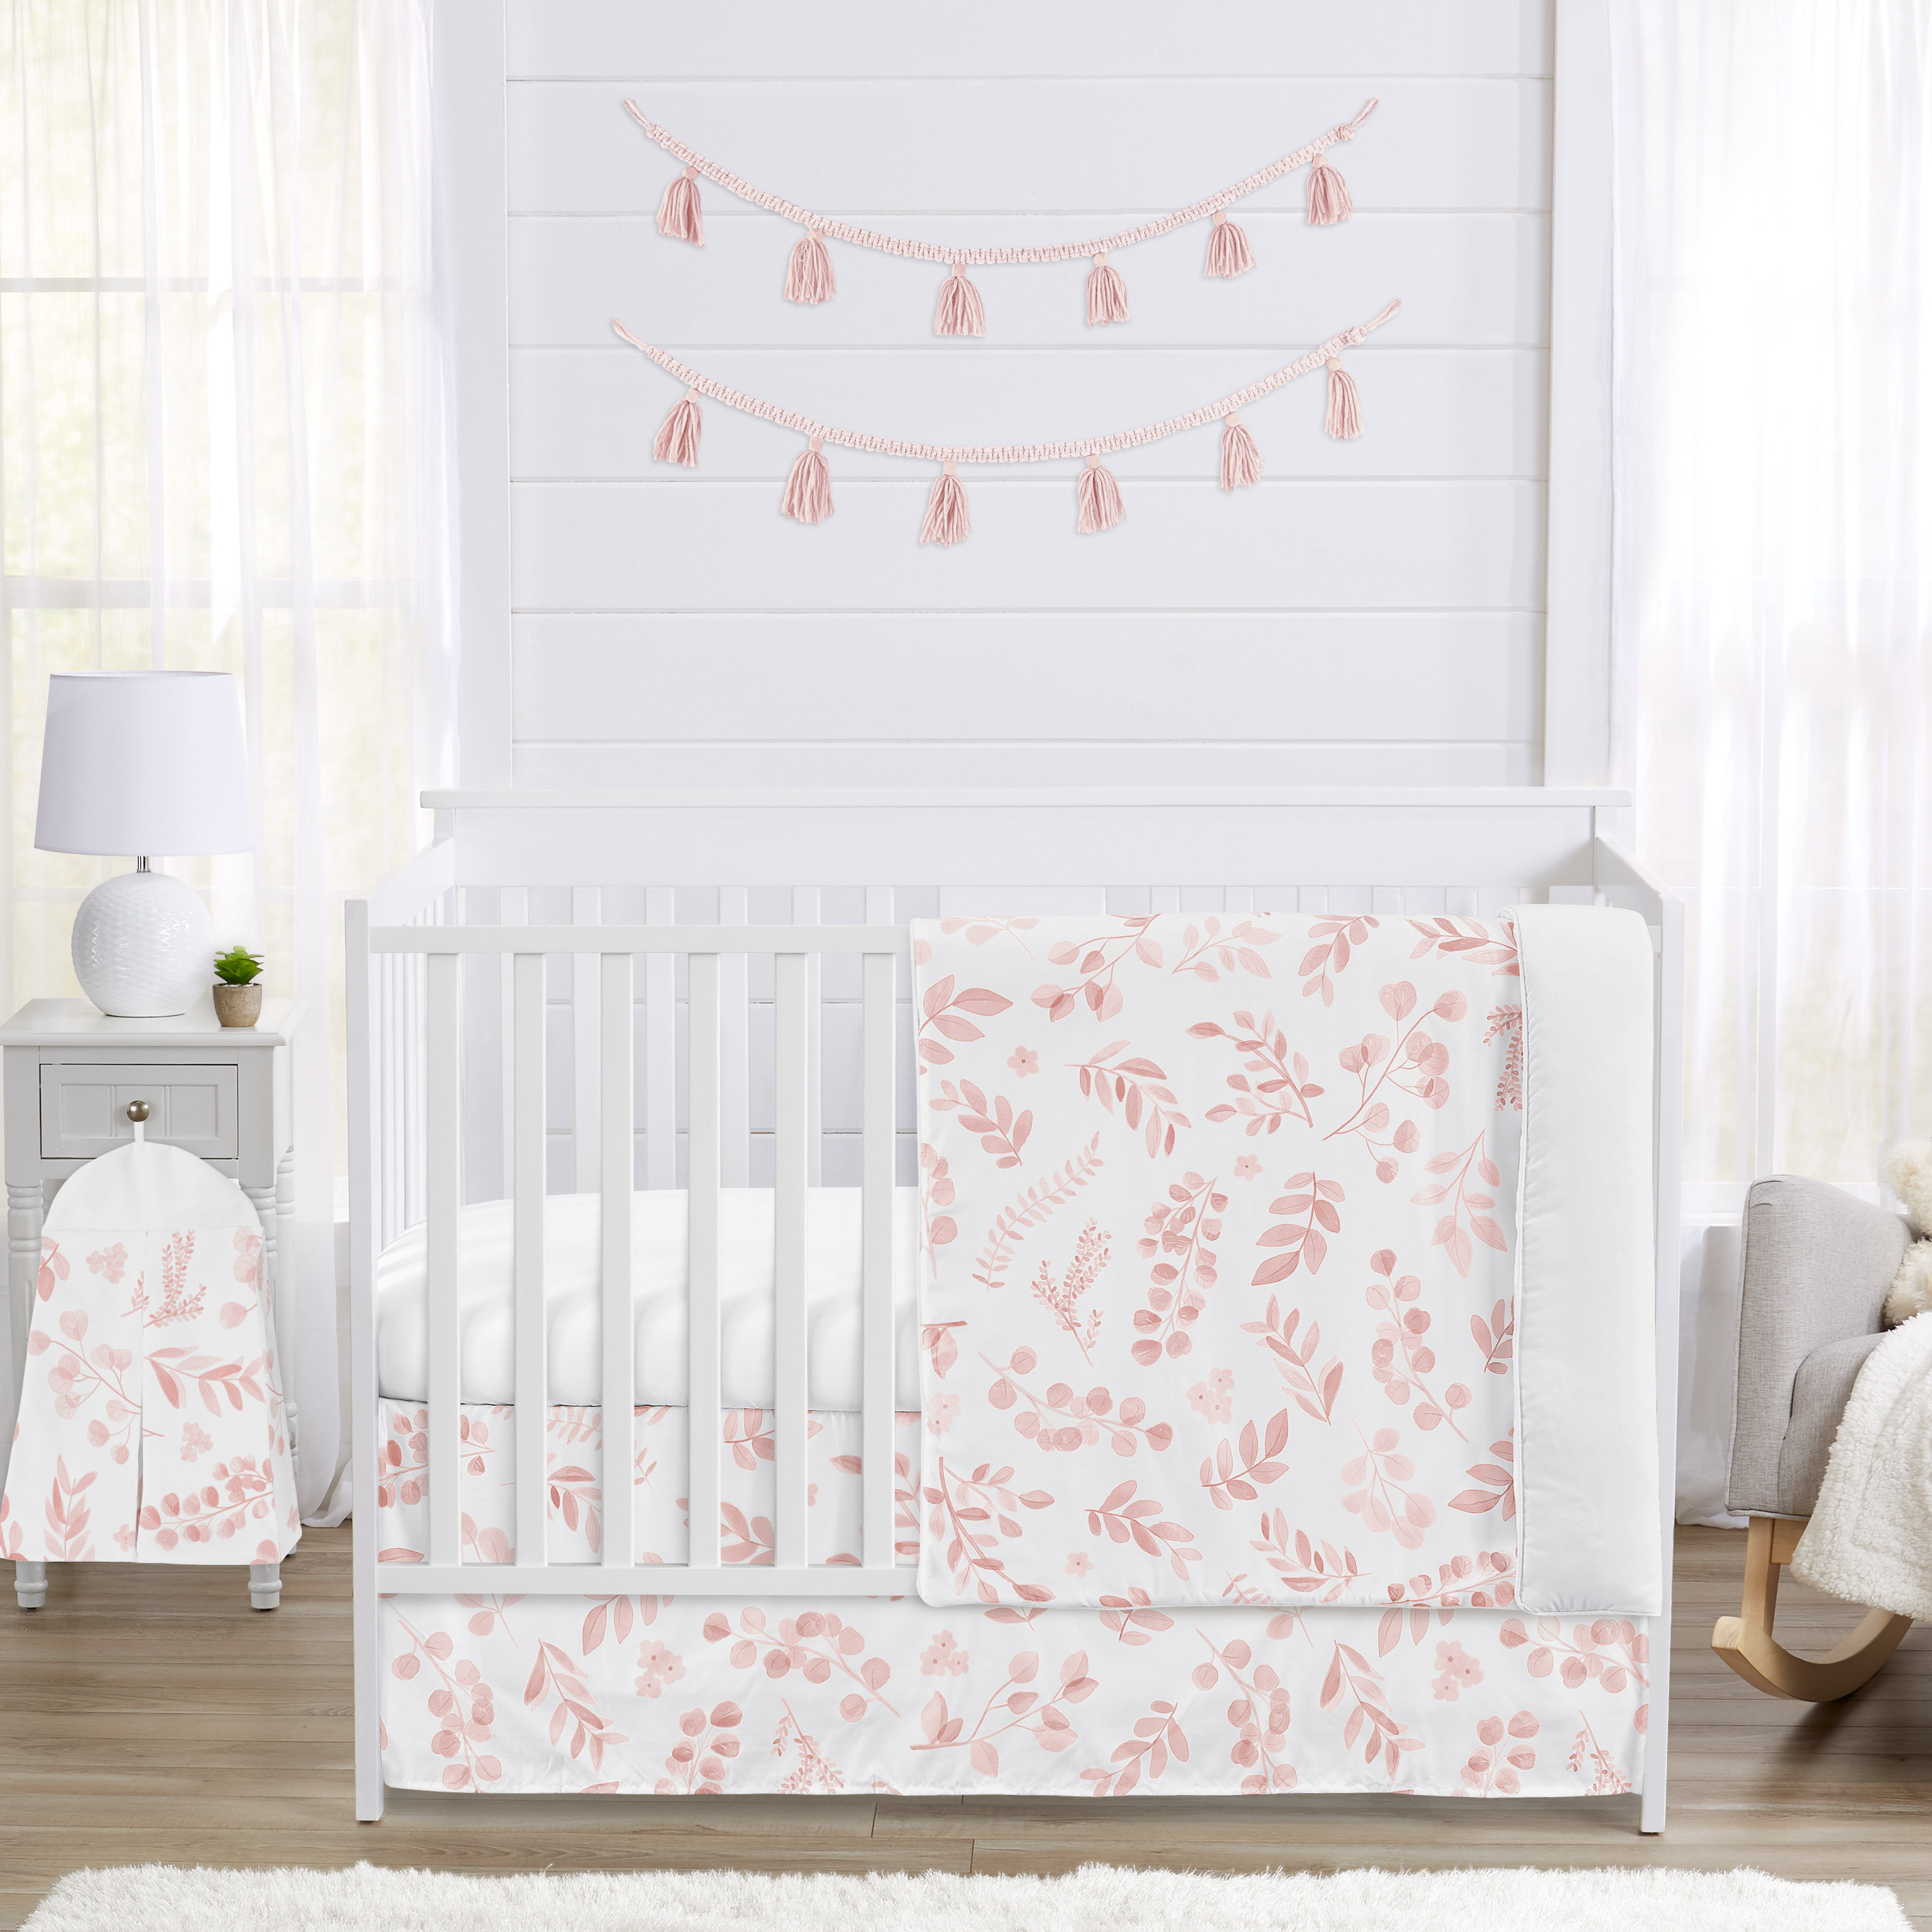 Botanical Blush Pink 4 Piece Crib Bedding Set by Sweet Jojo Designs